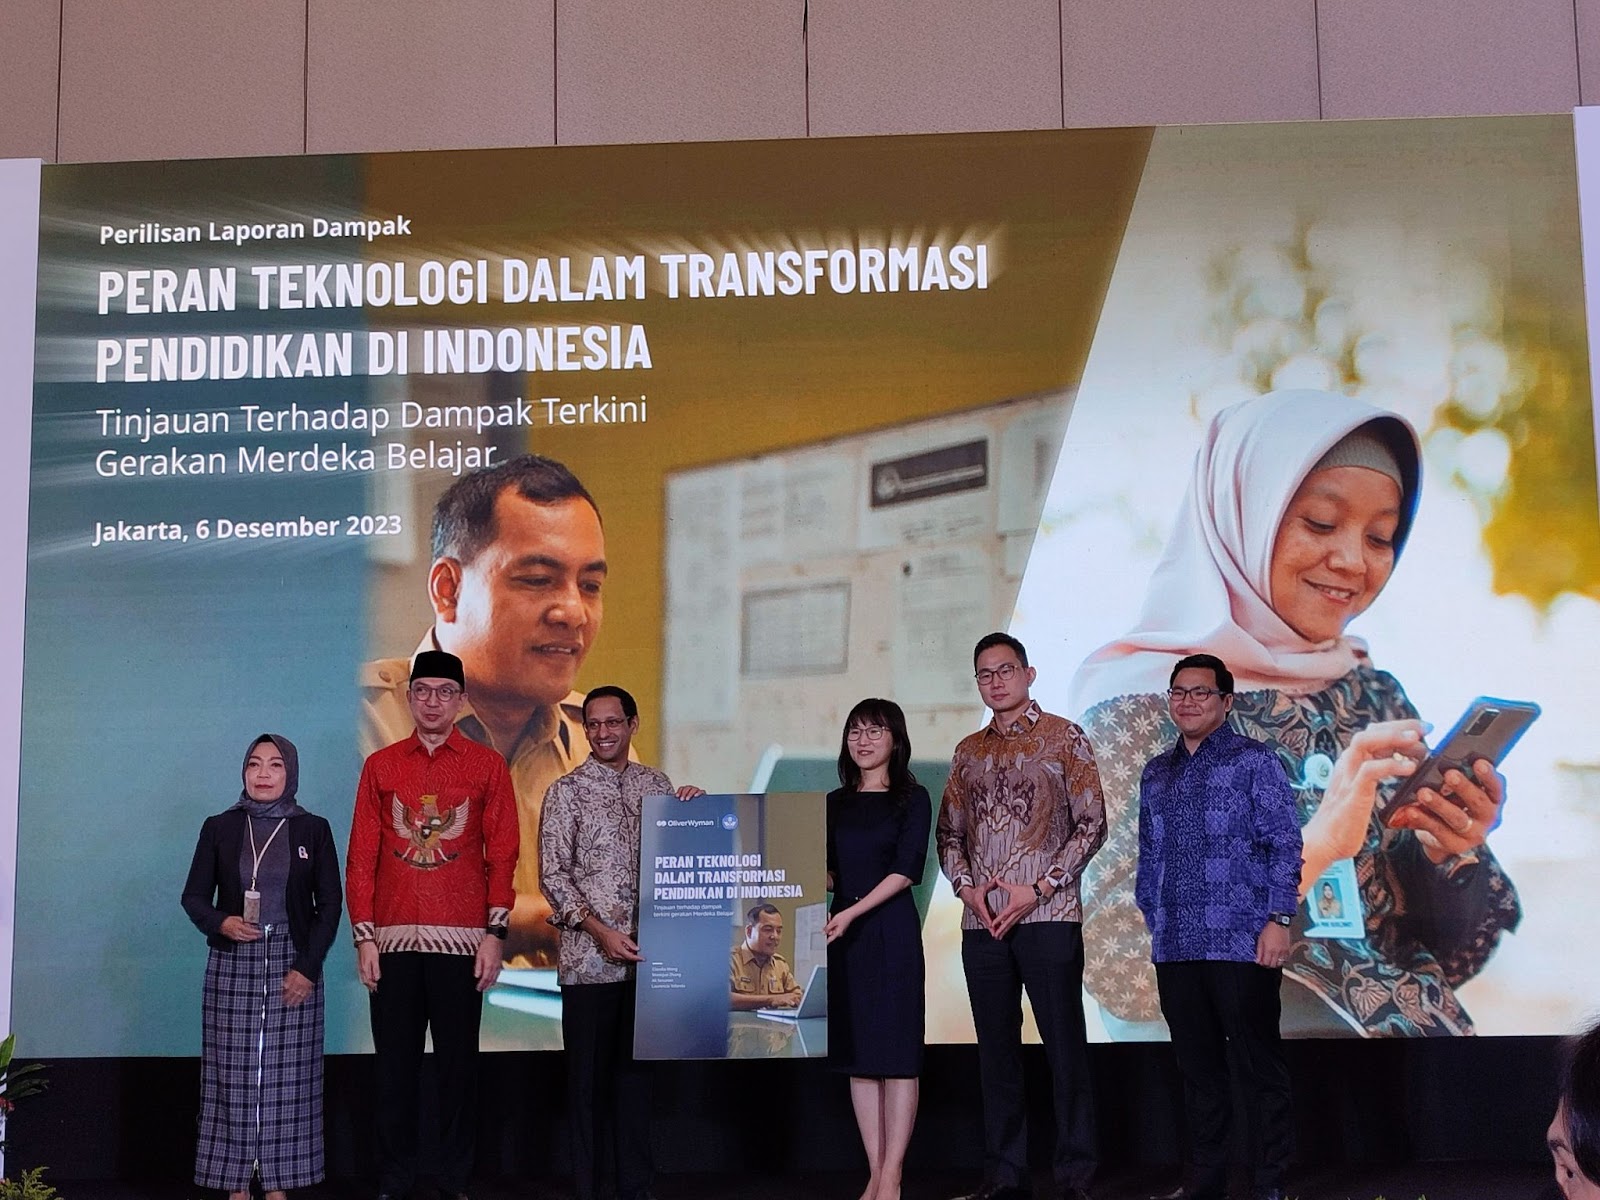 gerakan-merdeka-belajar-susek-tranformasi-pendidikan-di-indonesia